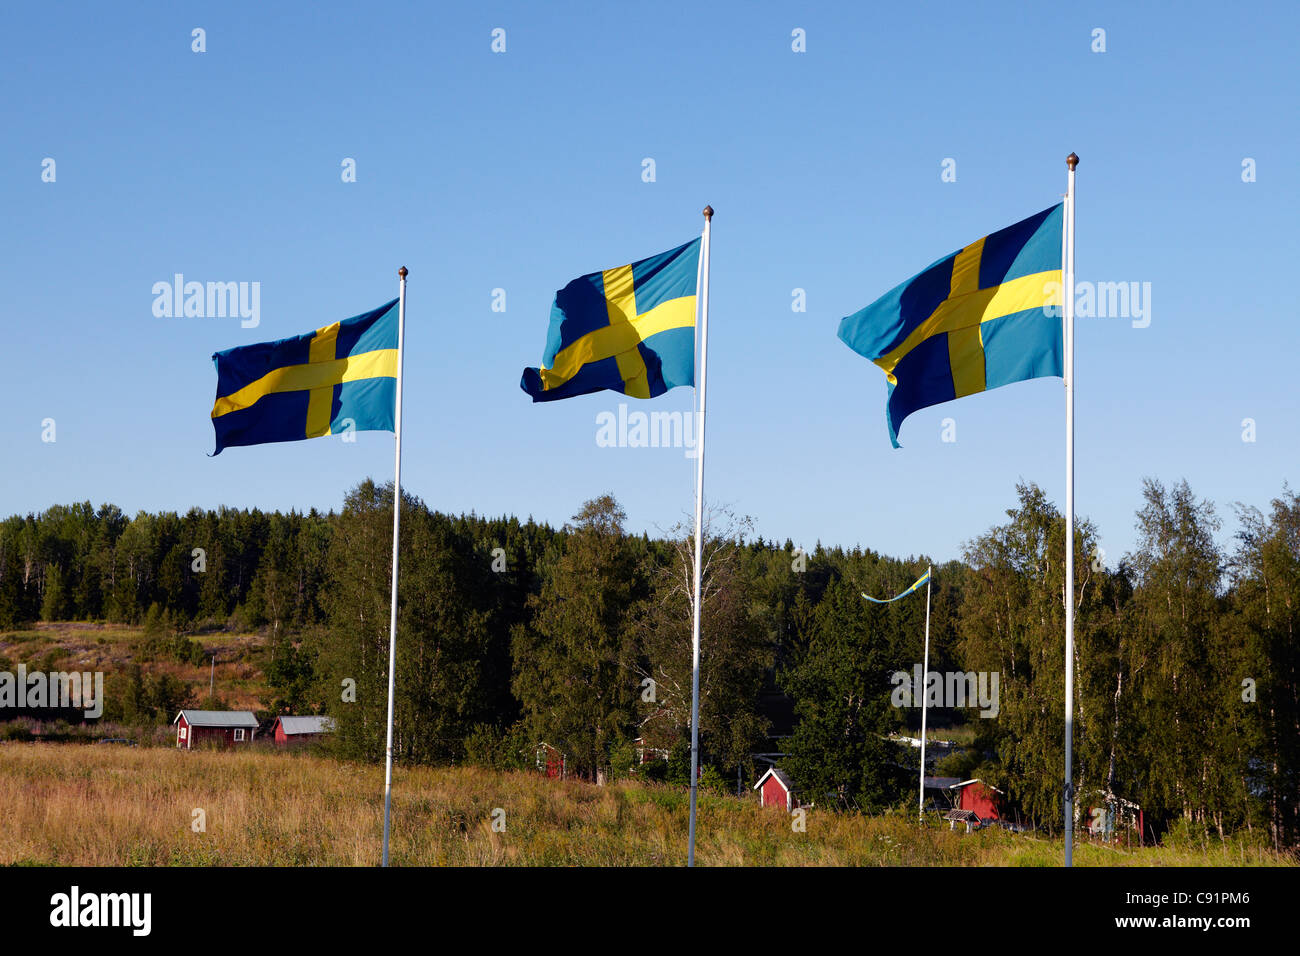 Drapeaux suédois au paysage rural Banque D'Images